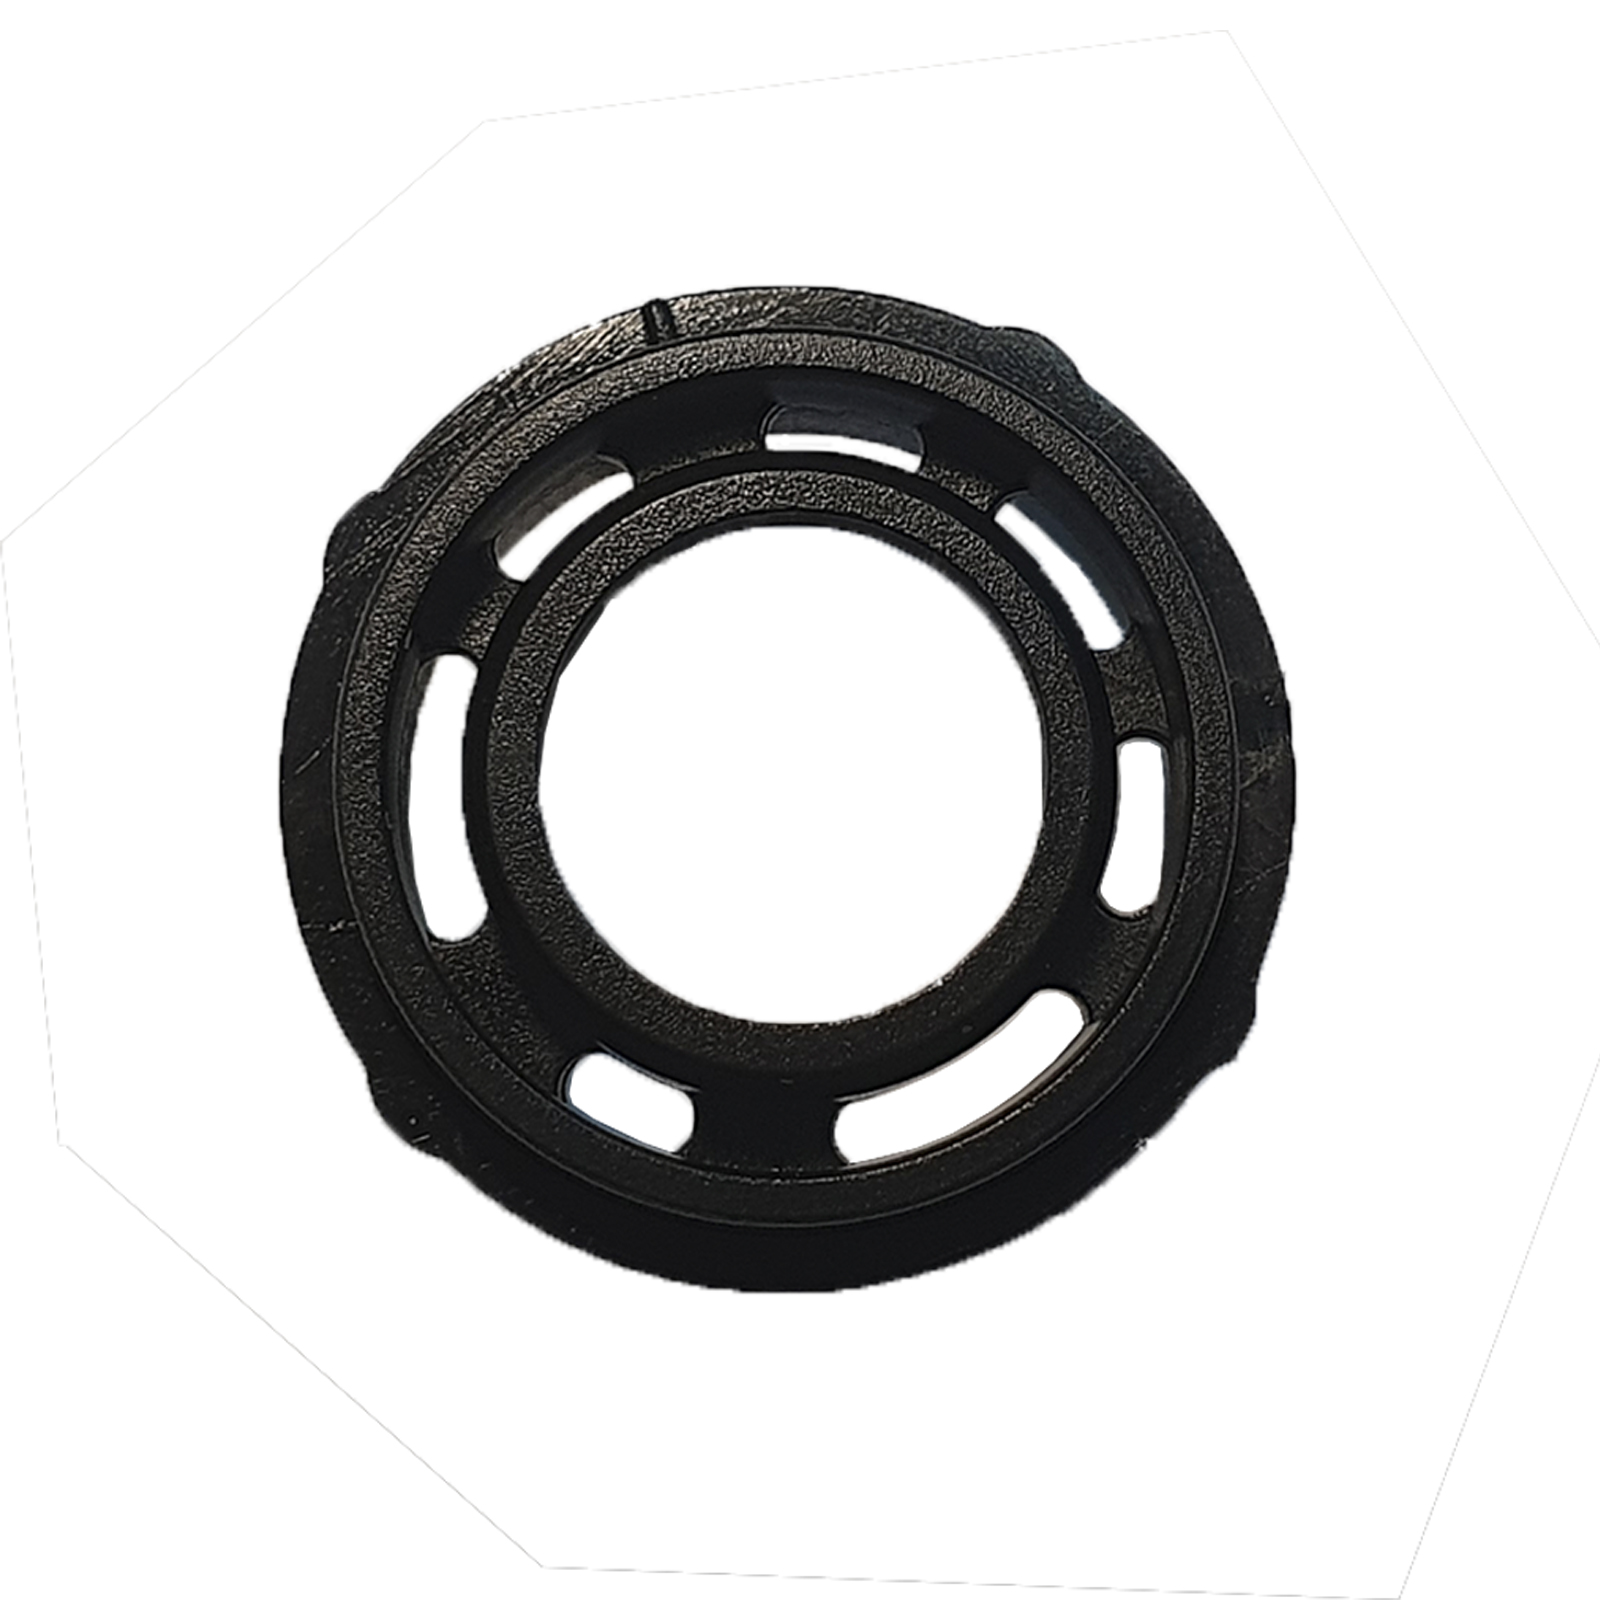 Уплотнительное кольцо для краскопультов miniJP3000 JETA PRO AR-miniJP3000